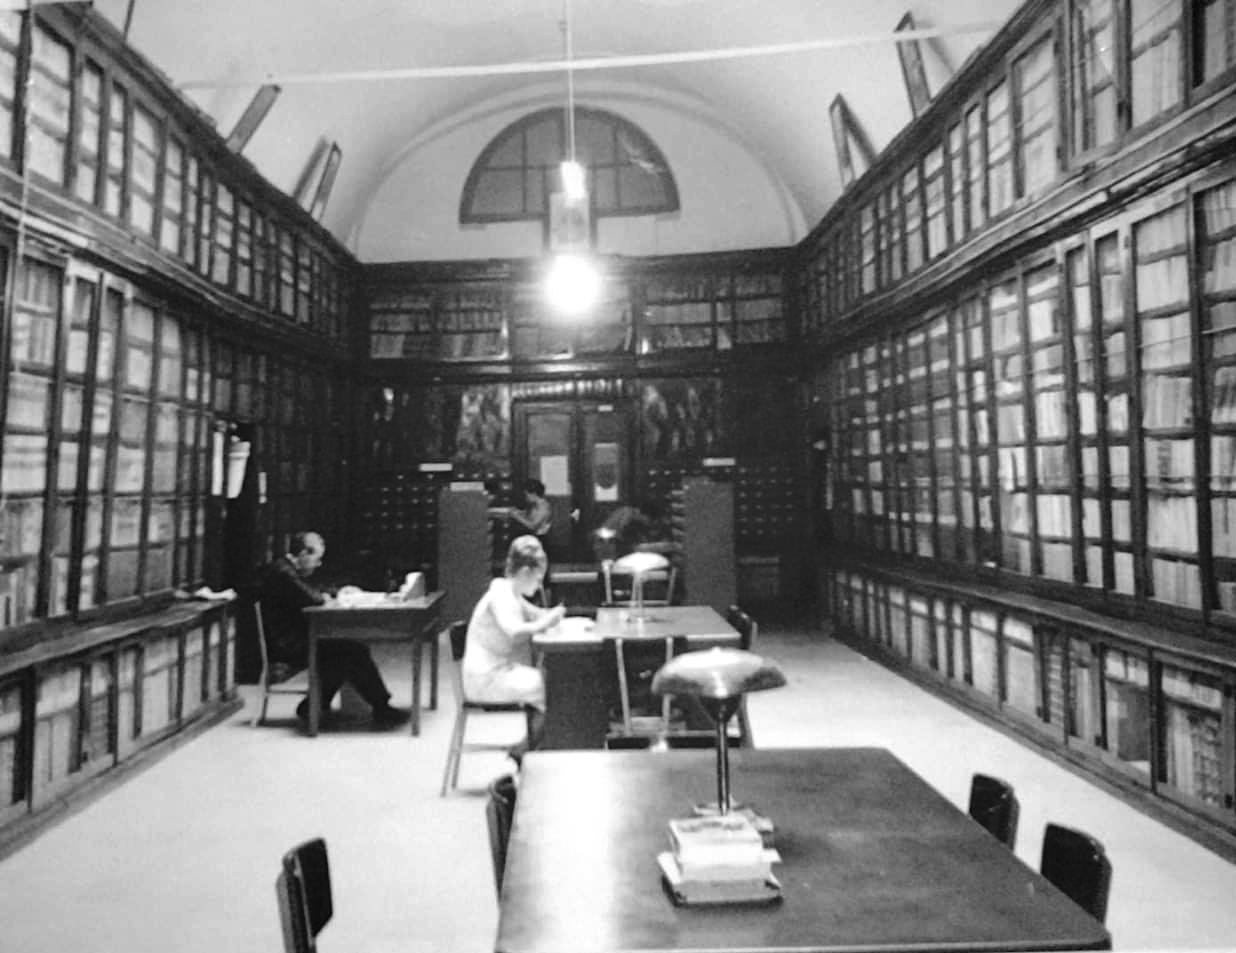 La Biblioteca Comunale “L. Scarabelli" (interno) era la meta delle ricerche di quei testi che gli is